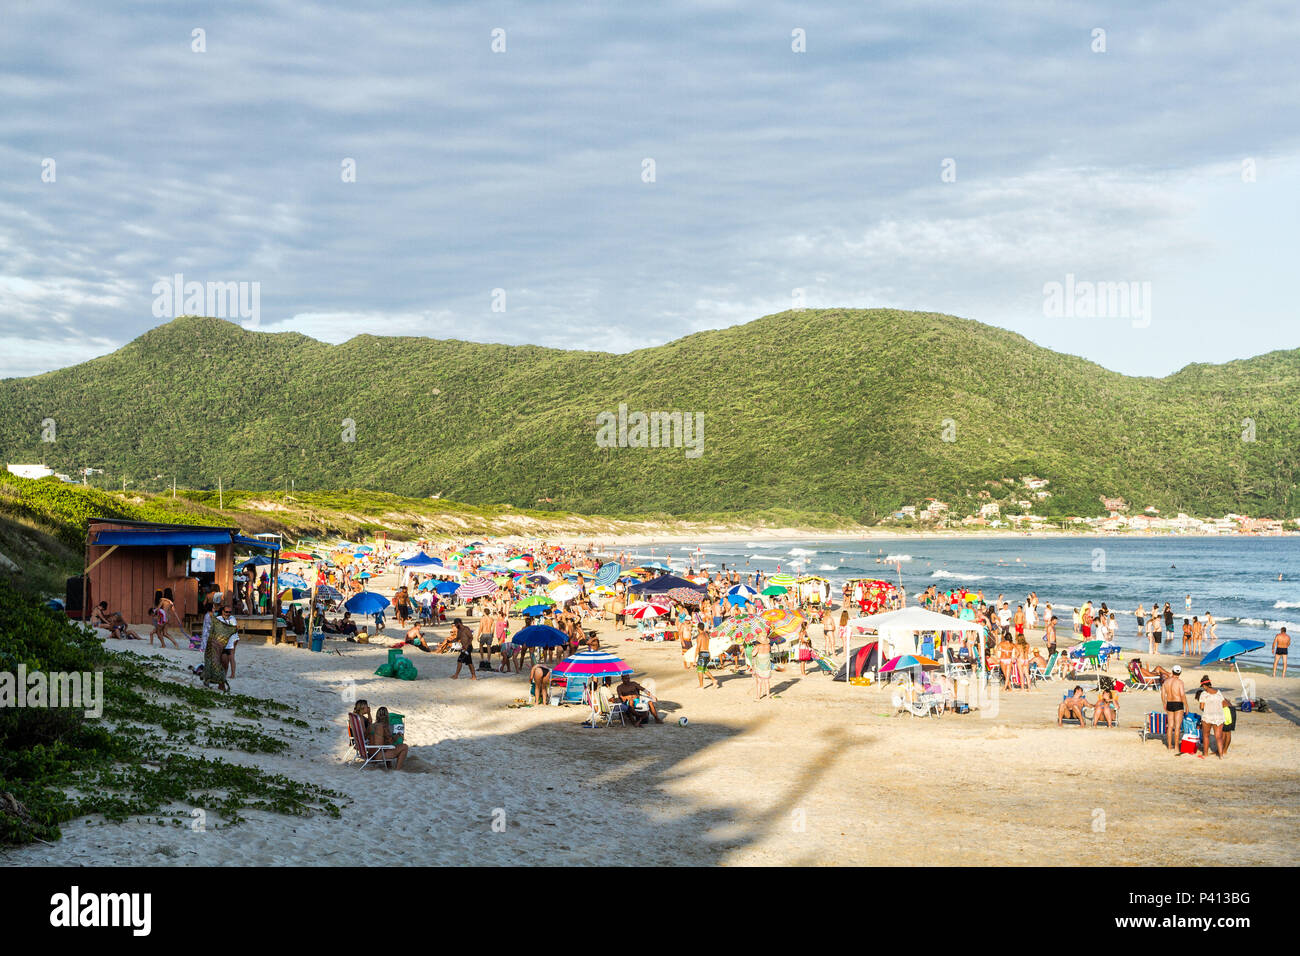 https://c8.alamy.com/comp/P413BG/temporada-de-vero-na-praia-dos-aores-florianpolis-santa-catarina-brasil-P413BG.jpg